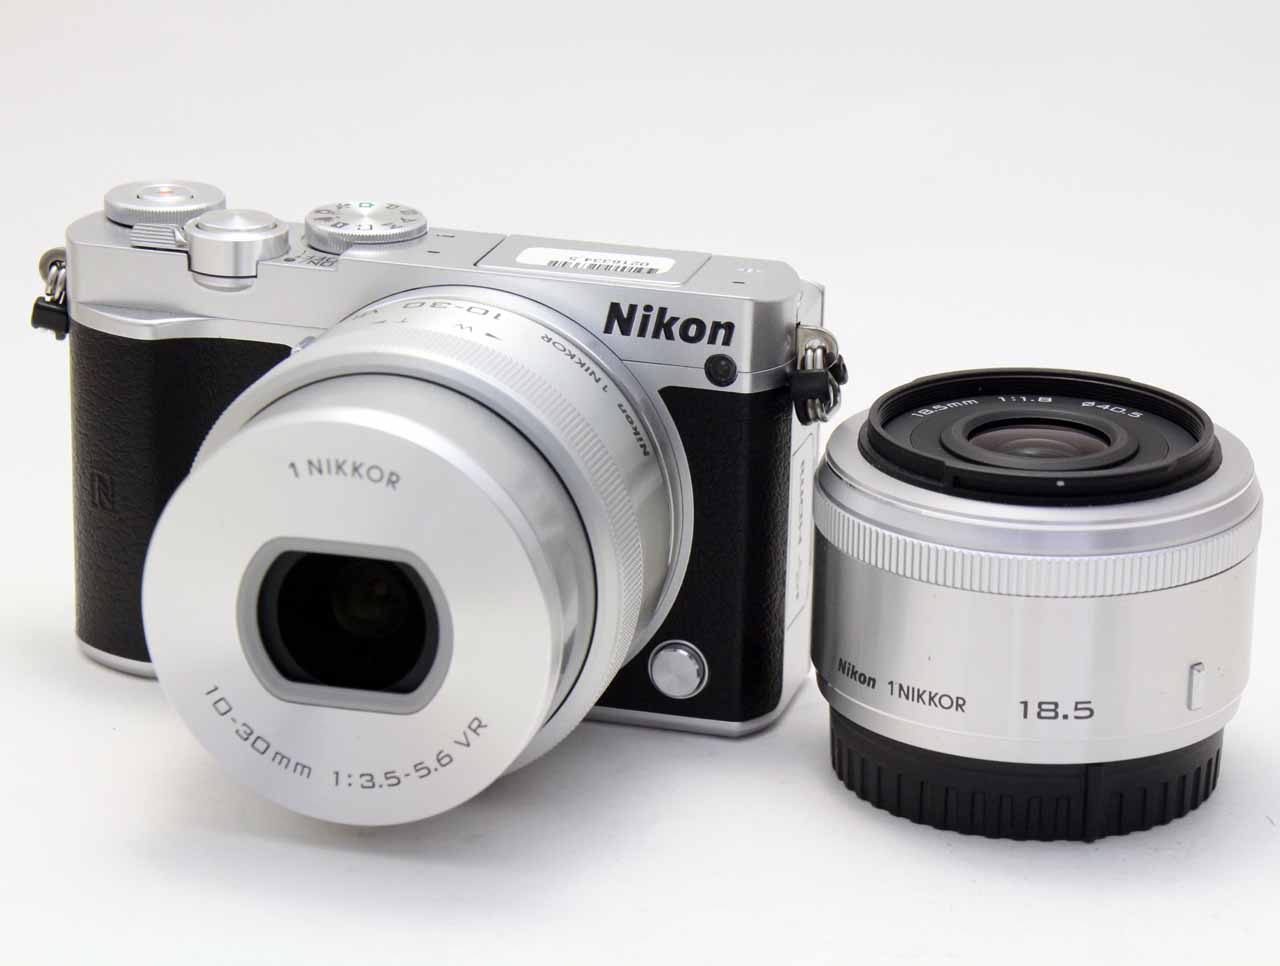 ニコン Nikon Nikon 1 J5 ダブルレンズキット シルバー トップカメラ カメラファン 中古カメラ レンズ 検索サイト 欲しい中古カメラが見つかる